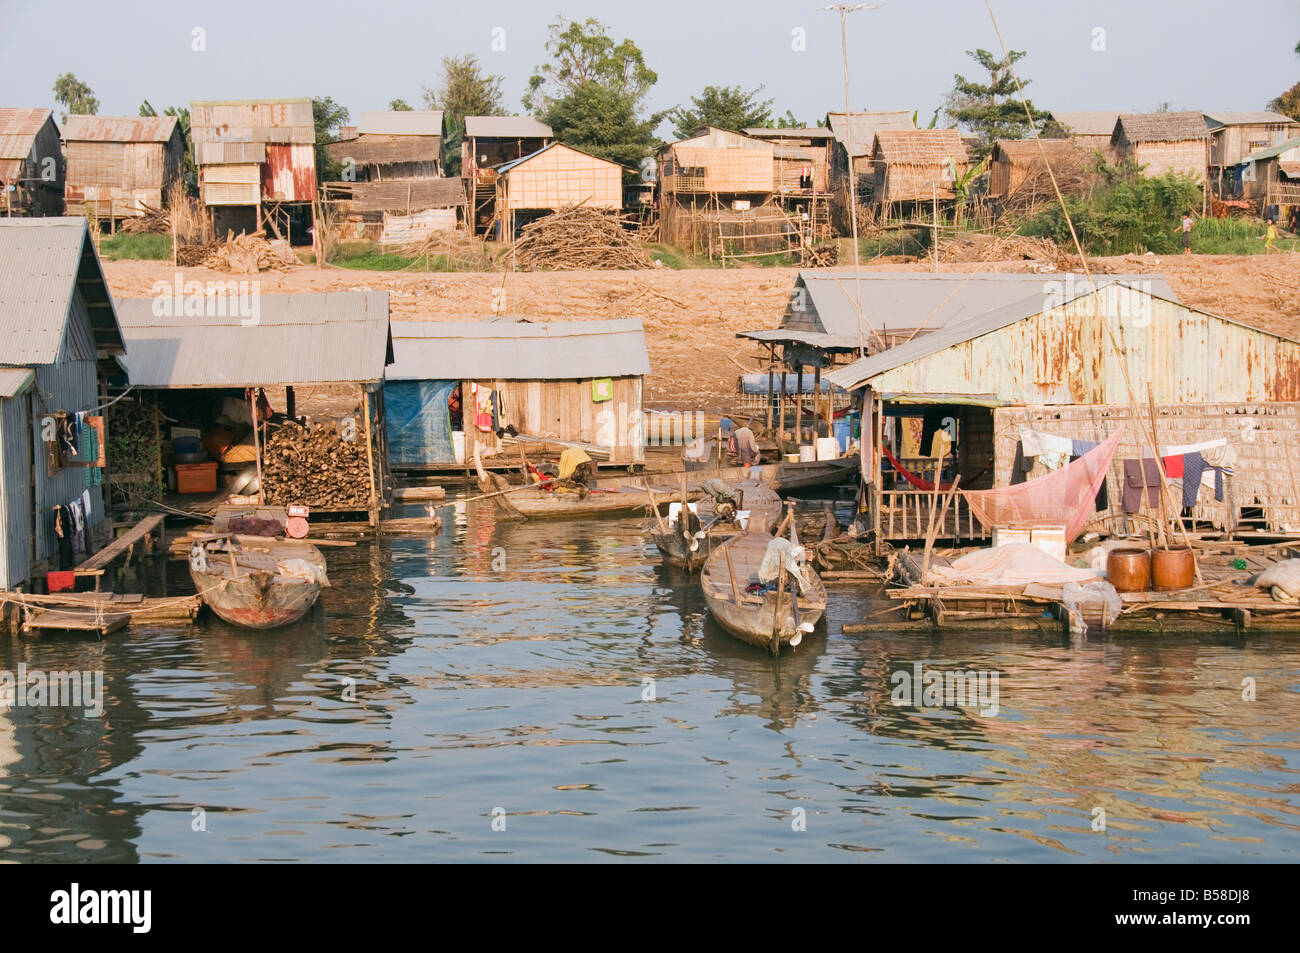 Floating borghi di pescatori, il fiume Mekong, Phnom Penh, Cambogia, Indocina, sud-est asiatico Foto Stock